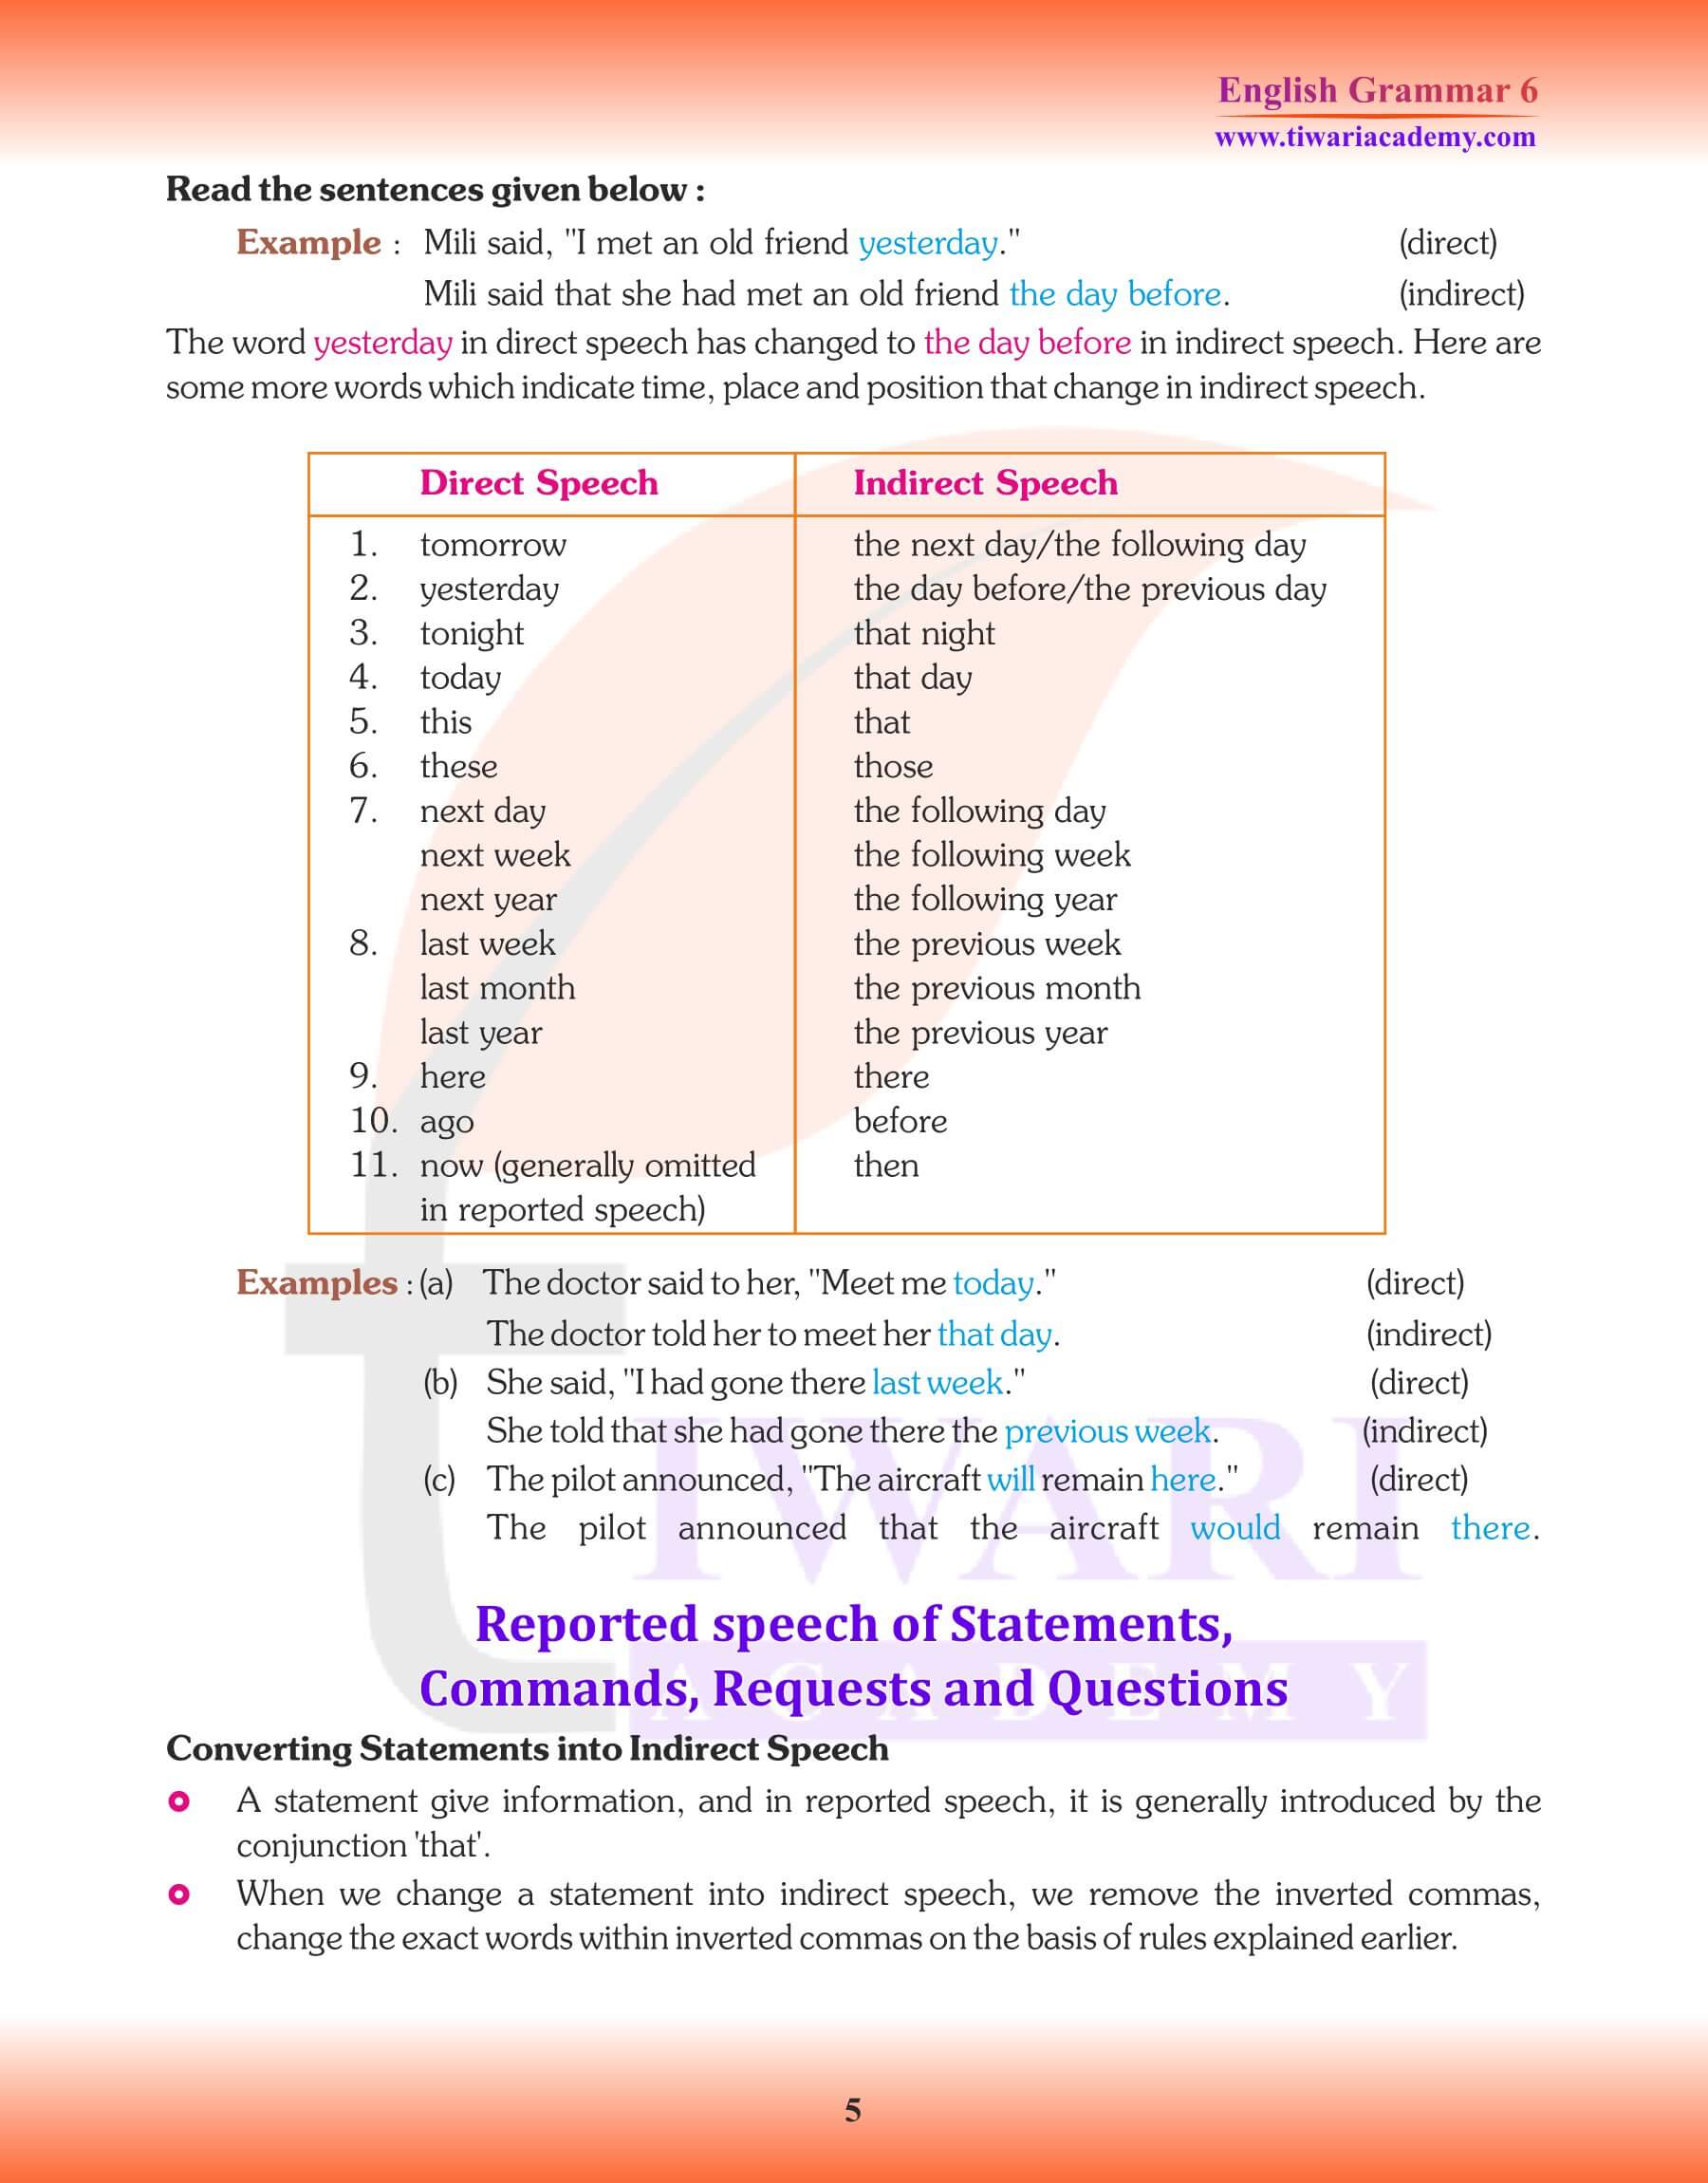 Class 6 Grammar Direct and Indirect Speech Study Material